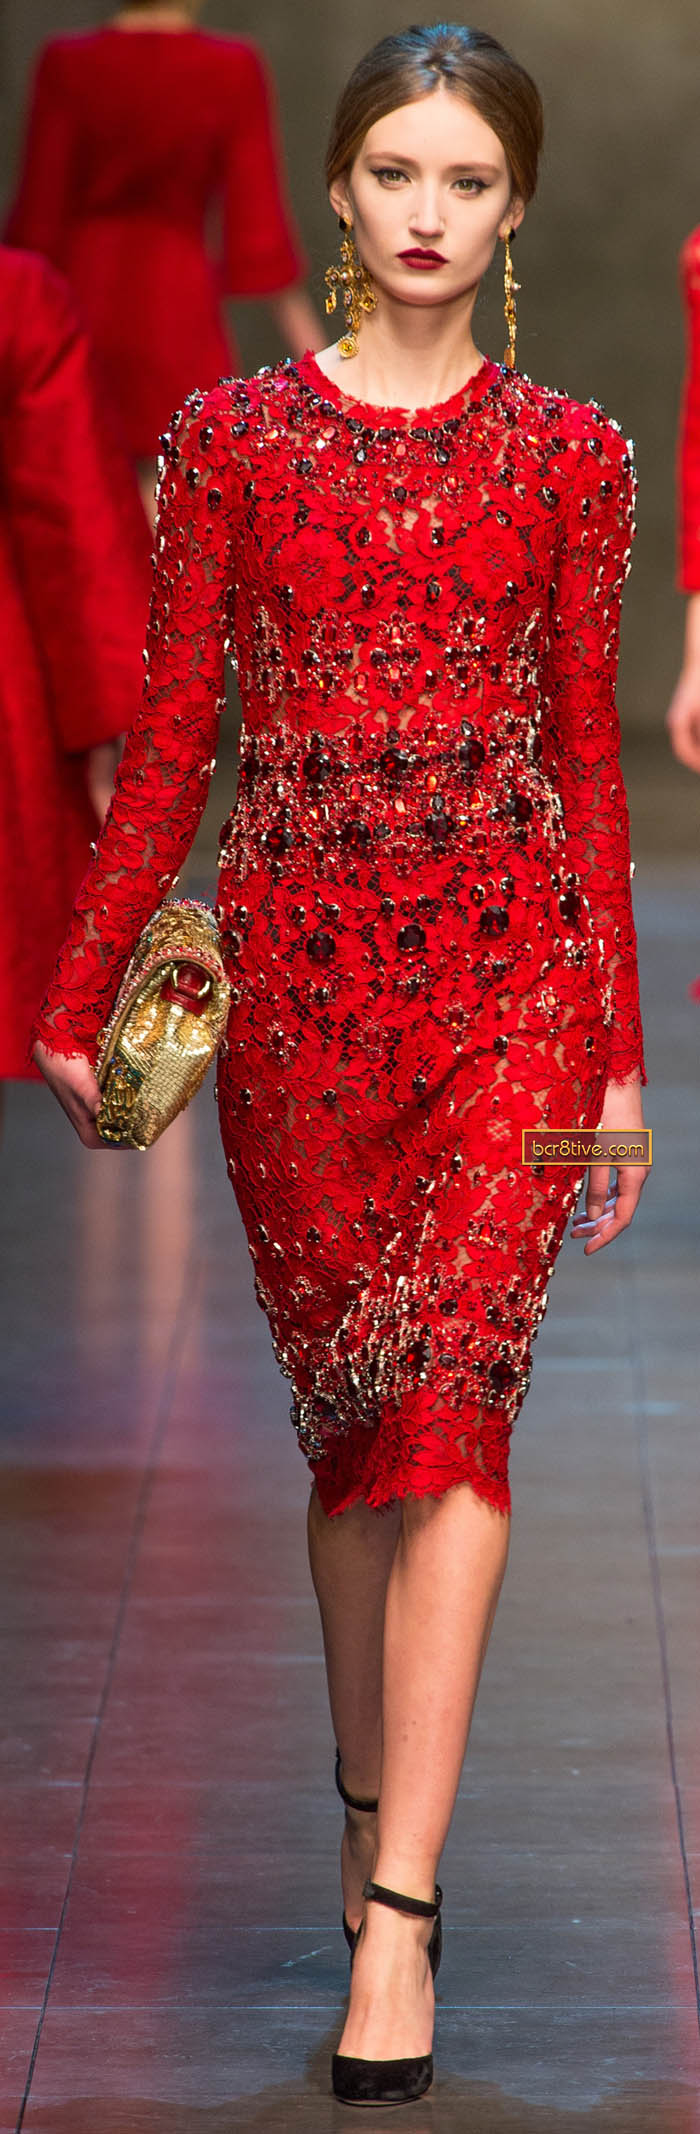 Dolce & Gabbana FW 2013-14